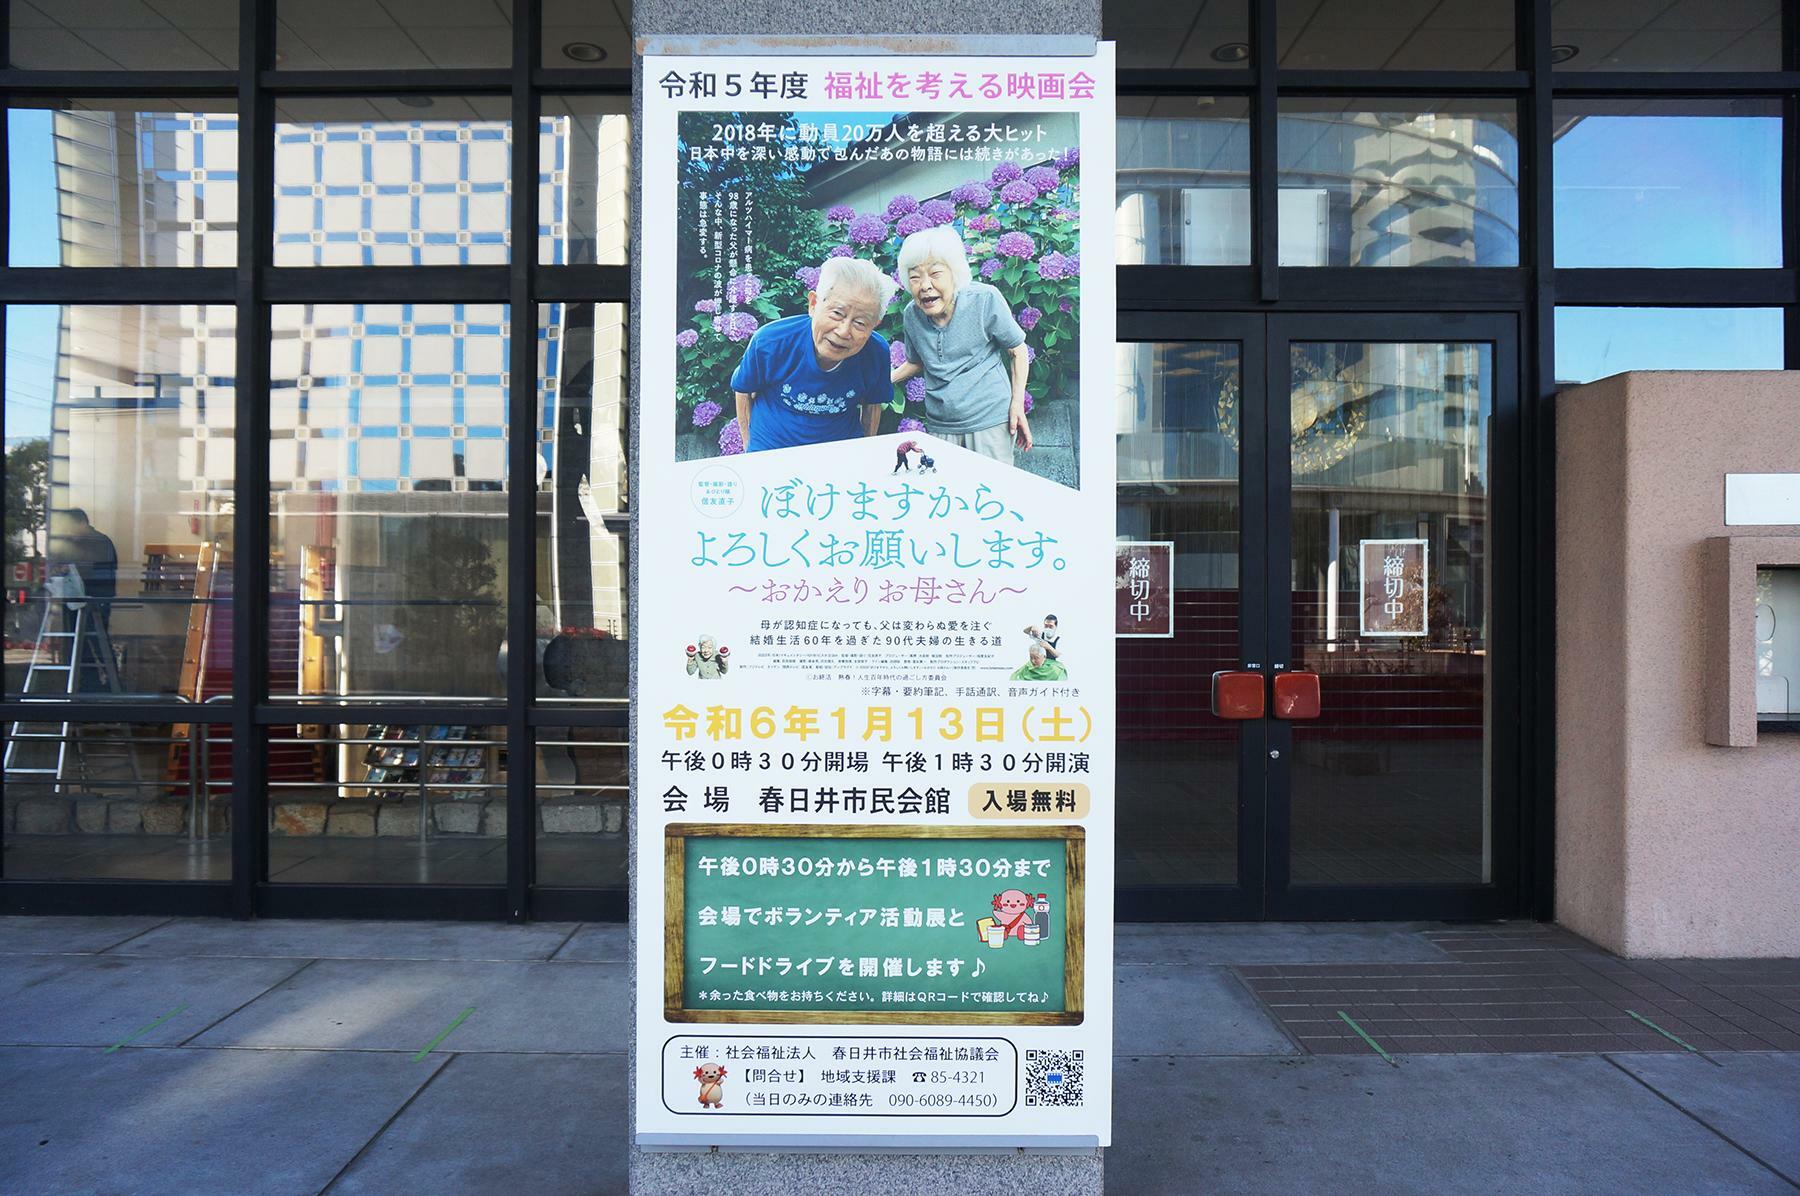 会場となる春日井市民会館前にもポスターが掲示されていました。